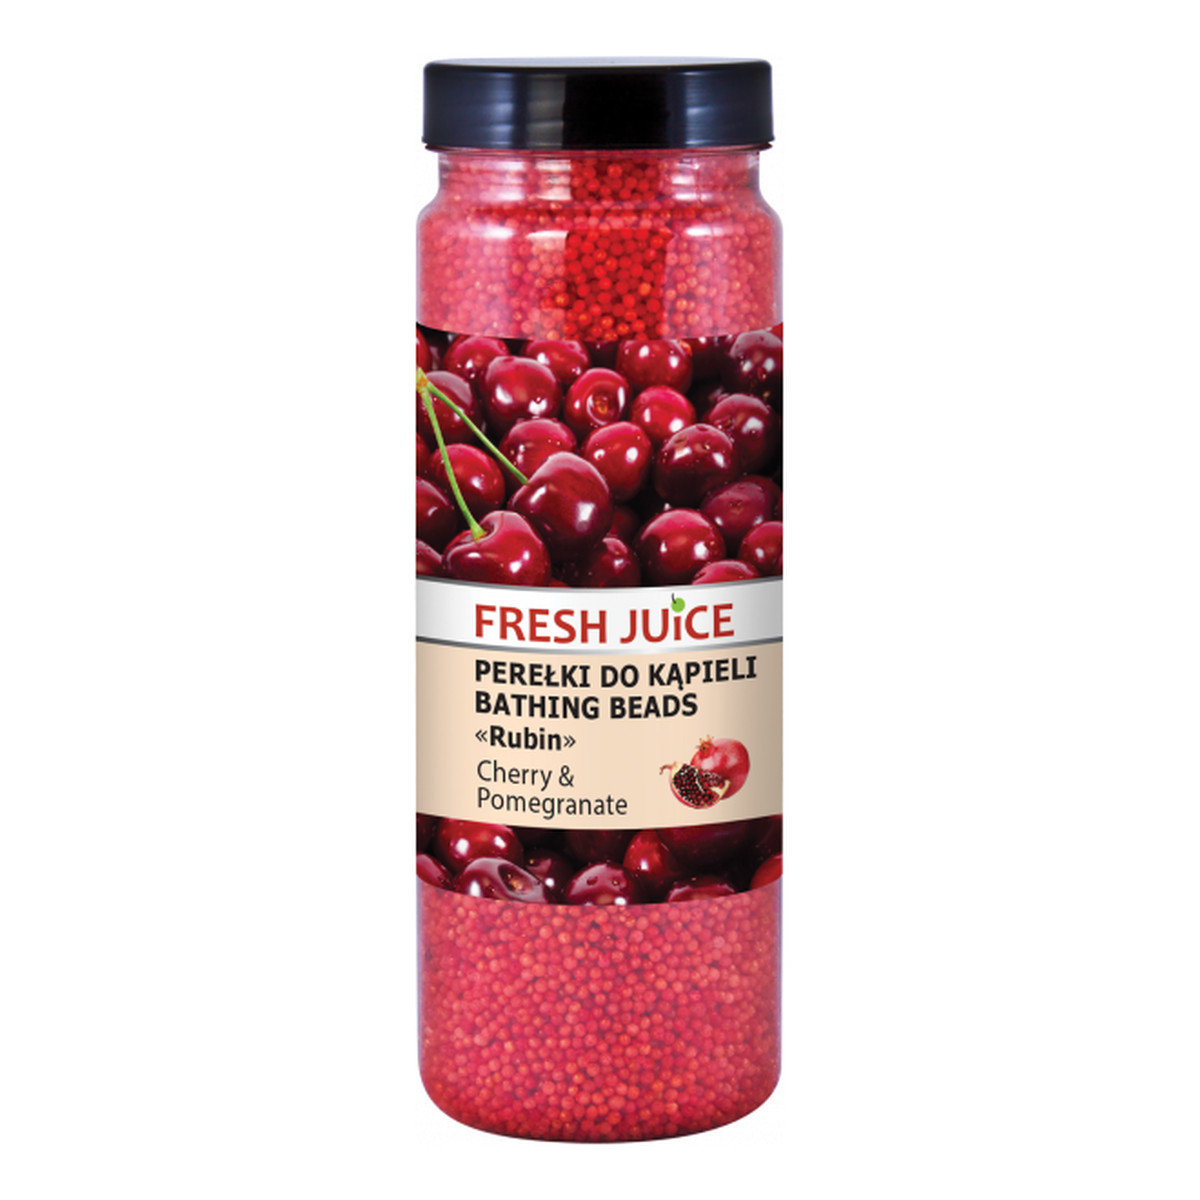 Fresh Juice Perełki do kąpieli Cherry & Pomegranate 450g